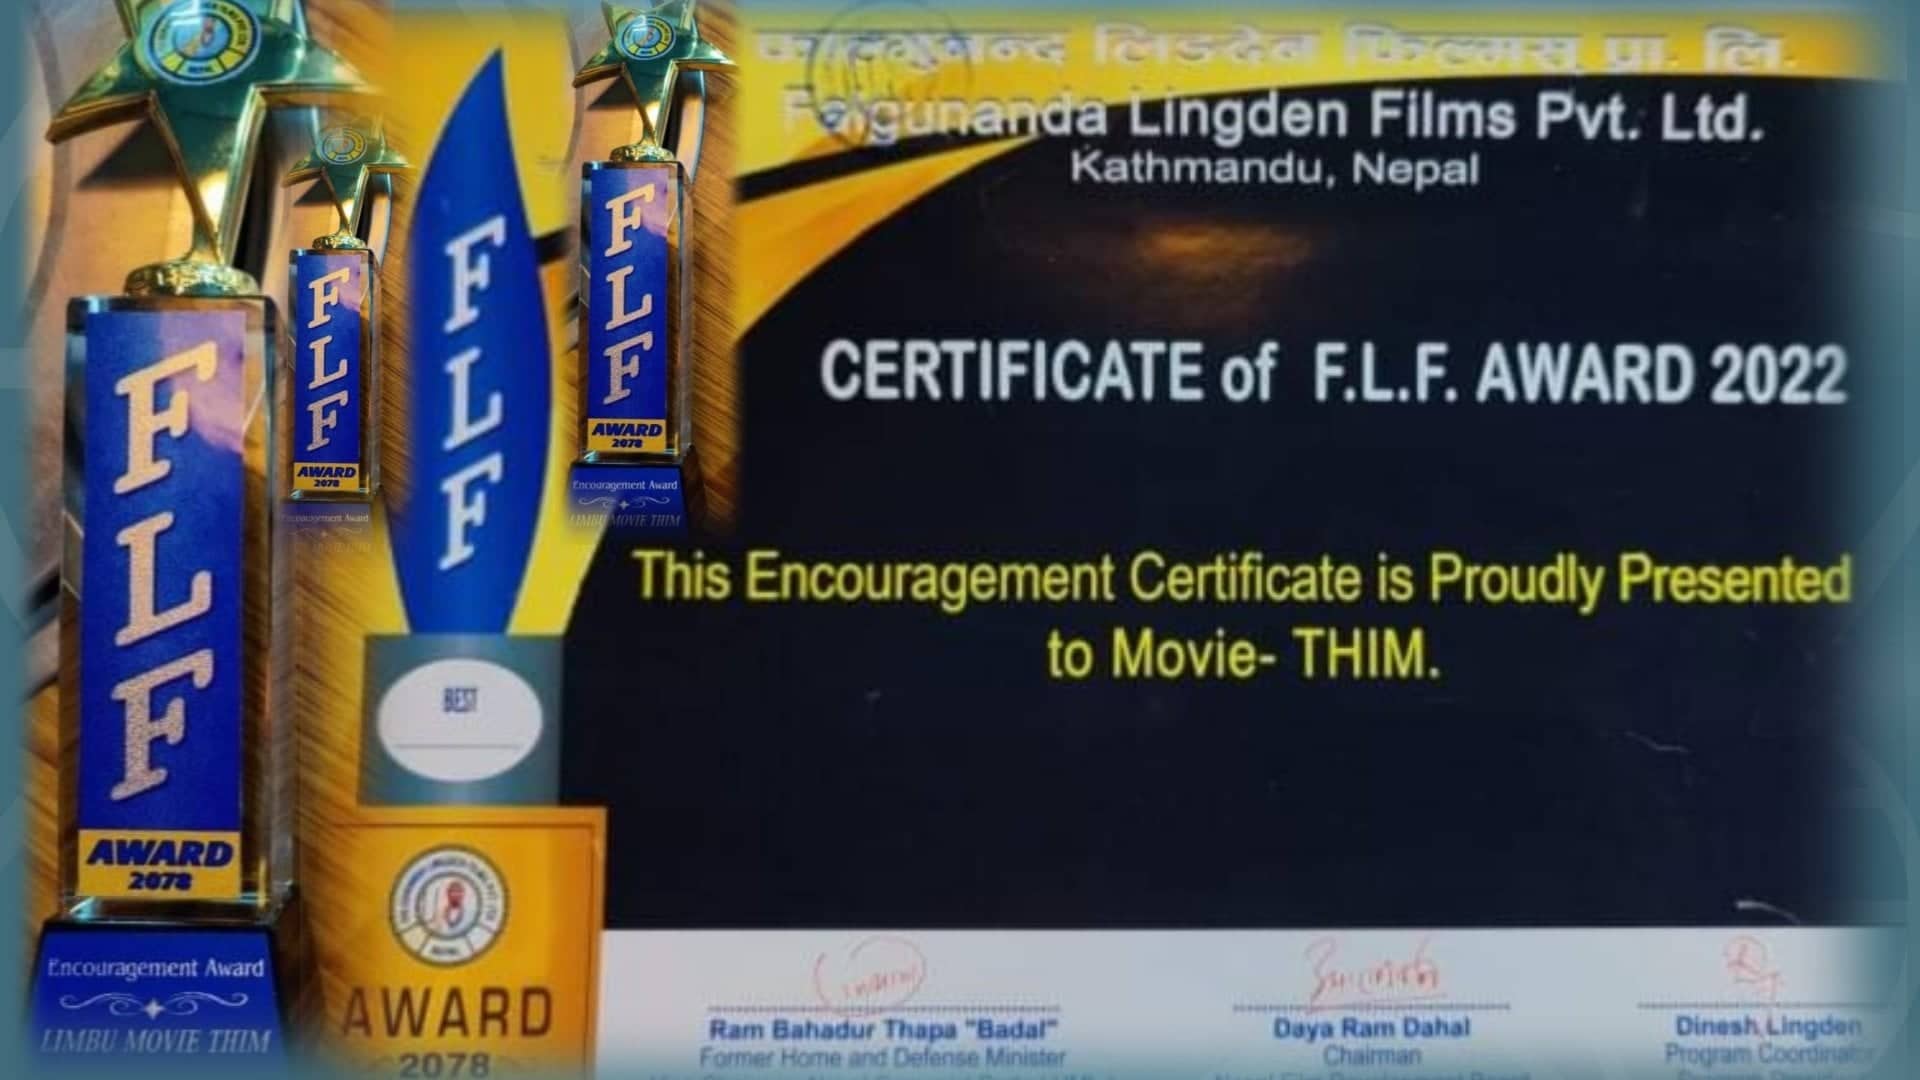 सागर केरुङ निर्देशित लिम्बू चलचित्र ‘थिम’ लाई ‘इन्करेजमेन्ट अवार्ड’